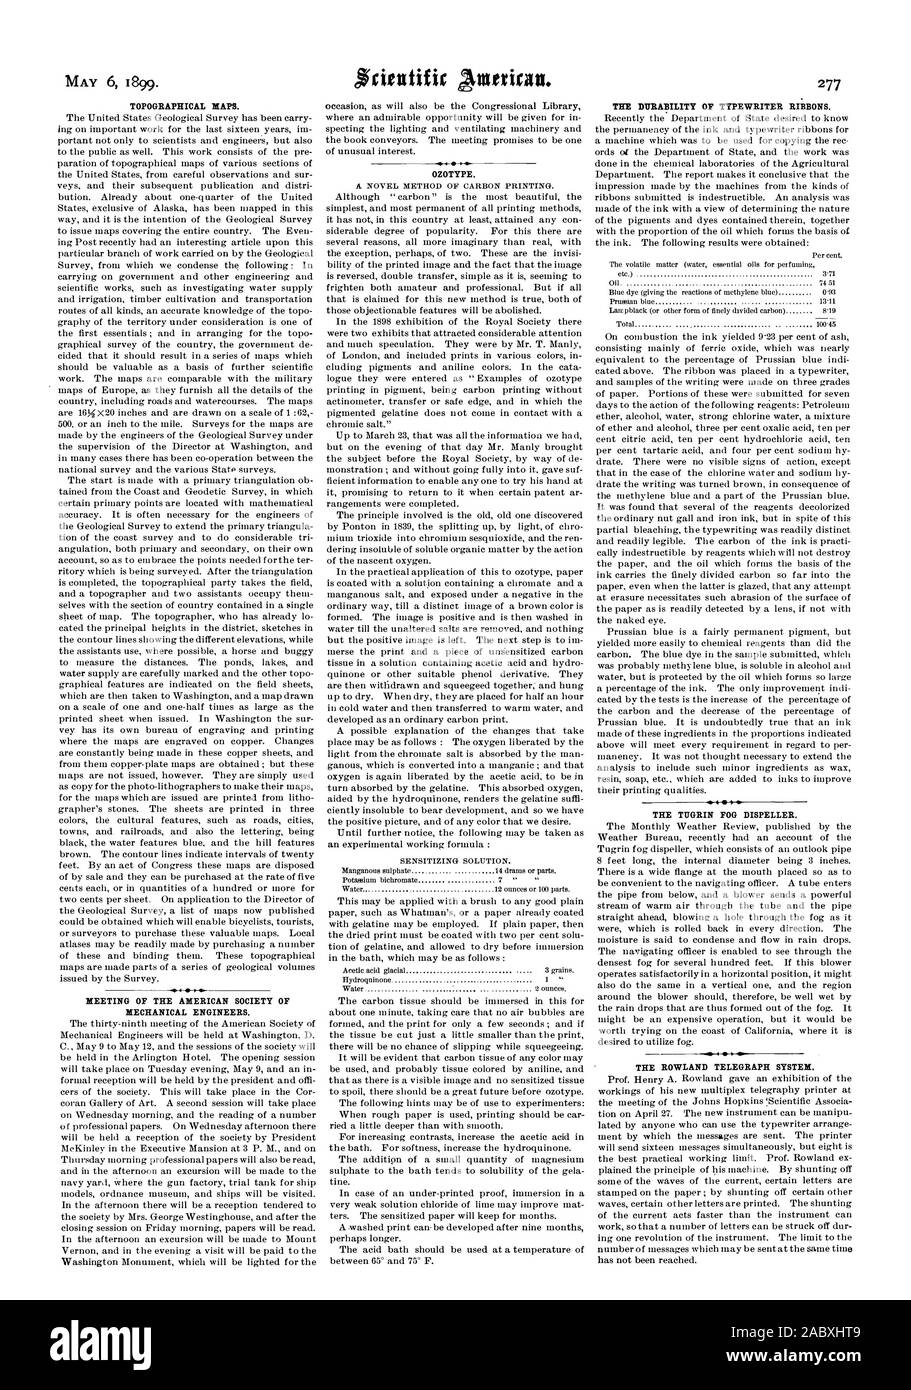 El 6 de mayo de 1899. Los mapas topográficos. Reunión de la Sociedad Americana de Ingenieros Mecánicos. OZOTYPE. La durabilidad de cintas para máquinas de escribir. La NIEBLA TIIGRIN DISPELLER. El sistema de telégrafo Rowland, Scientific American, 1899-05-06 Foto de stock